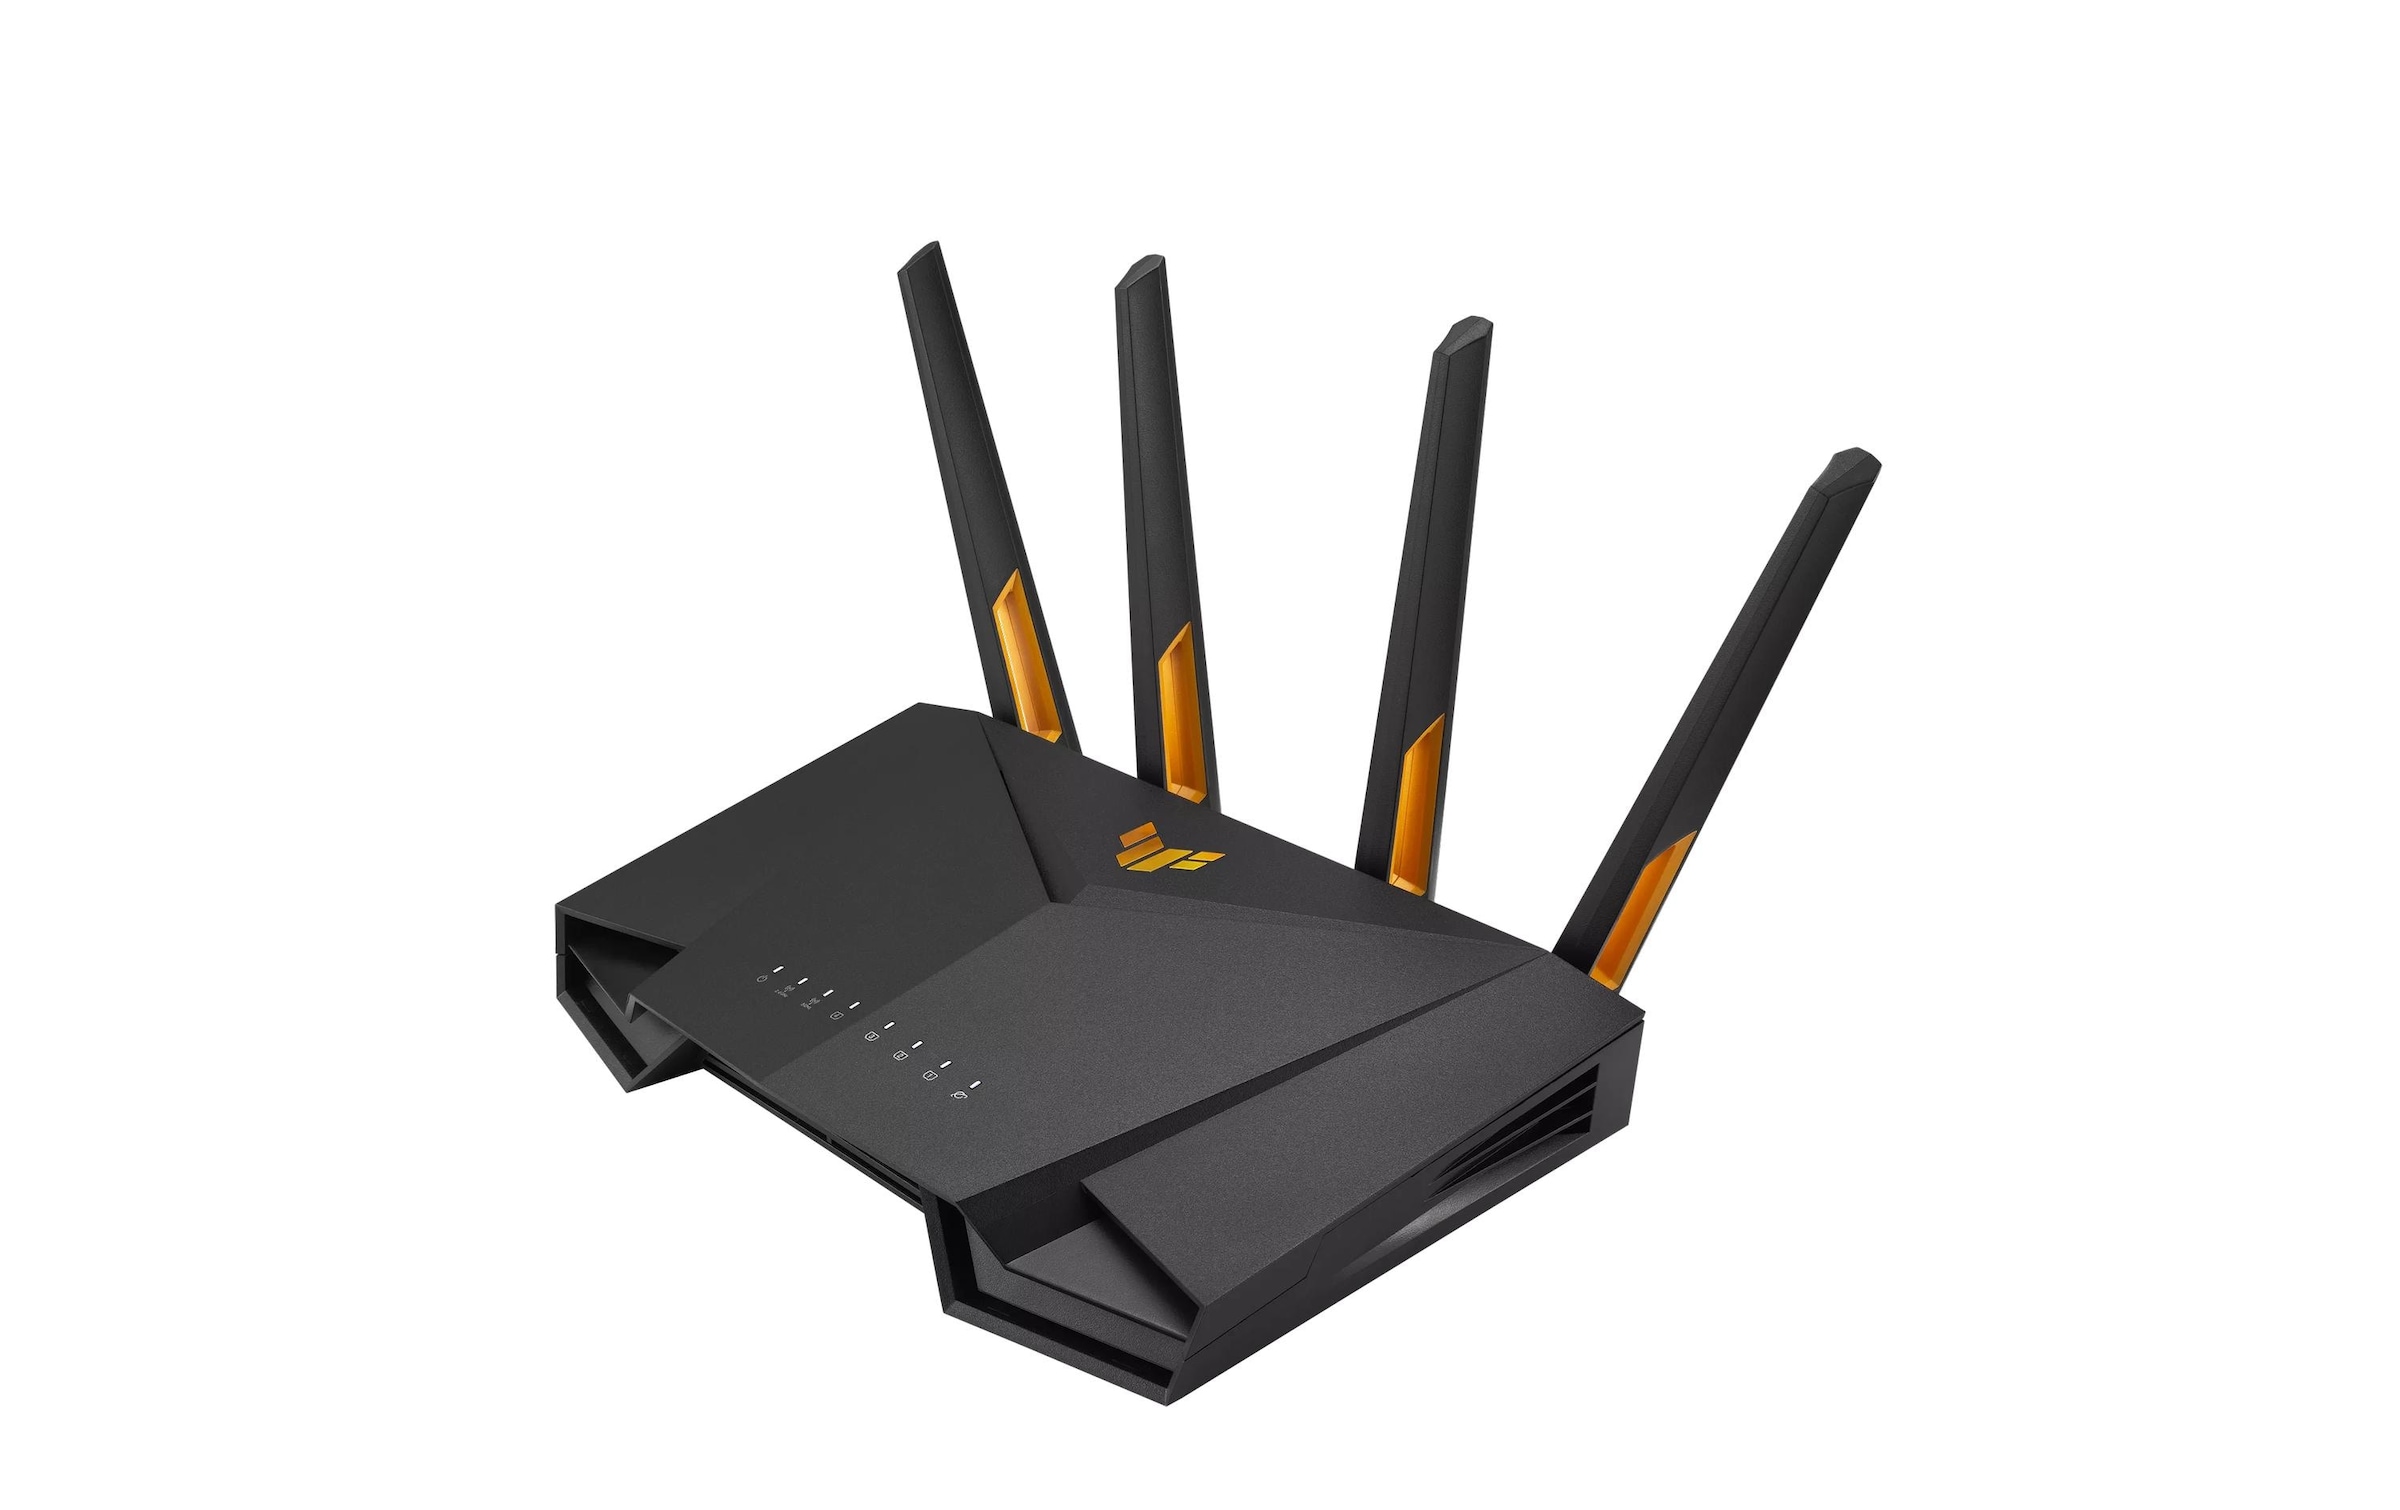 Asus WLAN-Router »TUF Gaming AX3000 V2 (TUF-AX3000 V2)«